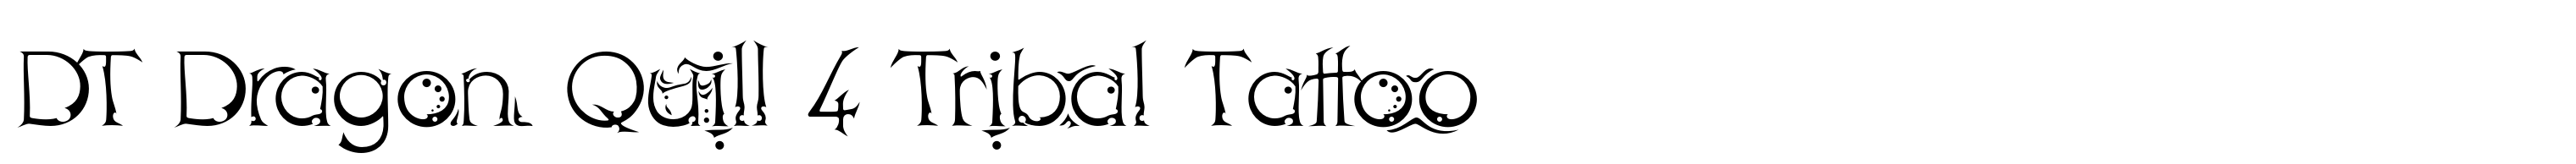 DT Dragon Quill 4 Tribal Tattoo